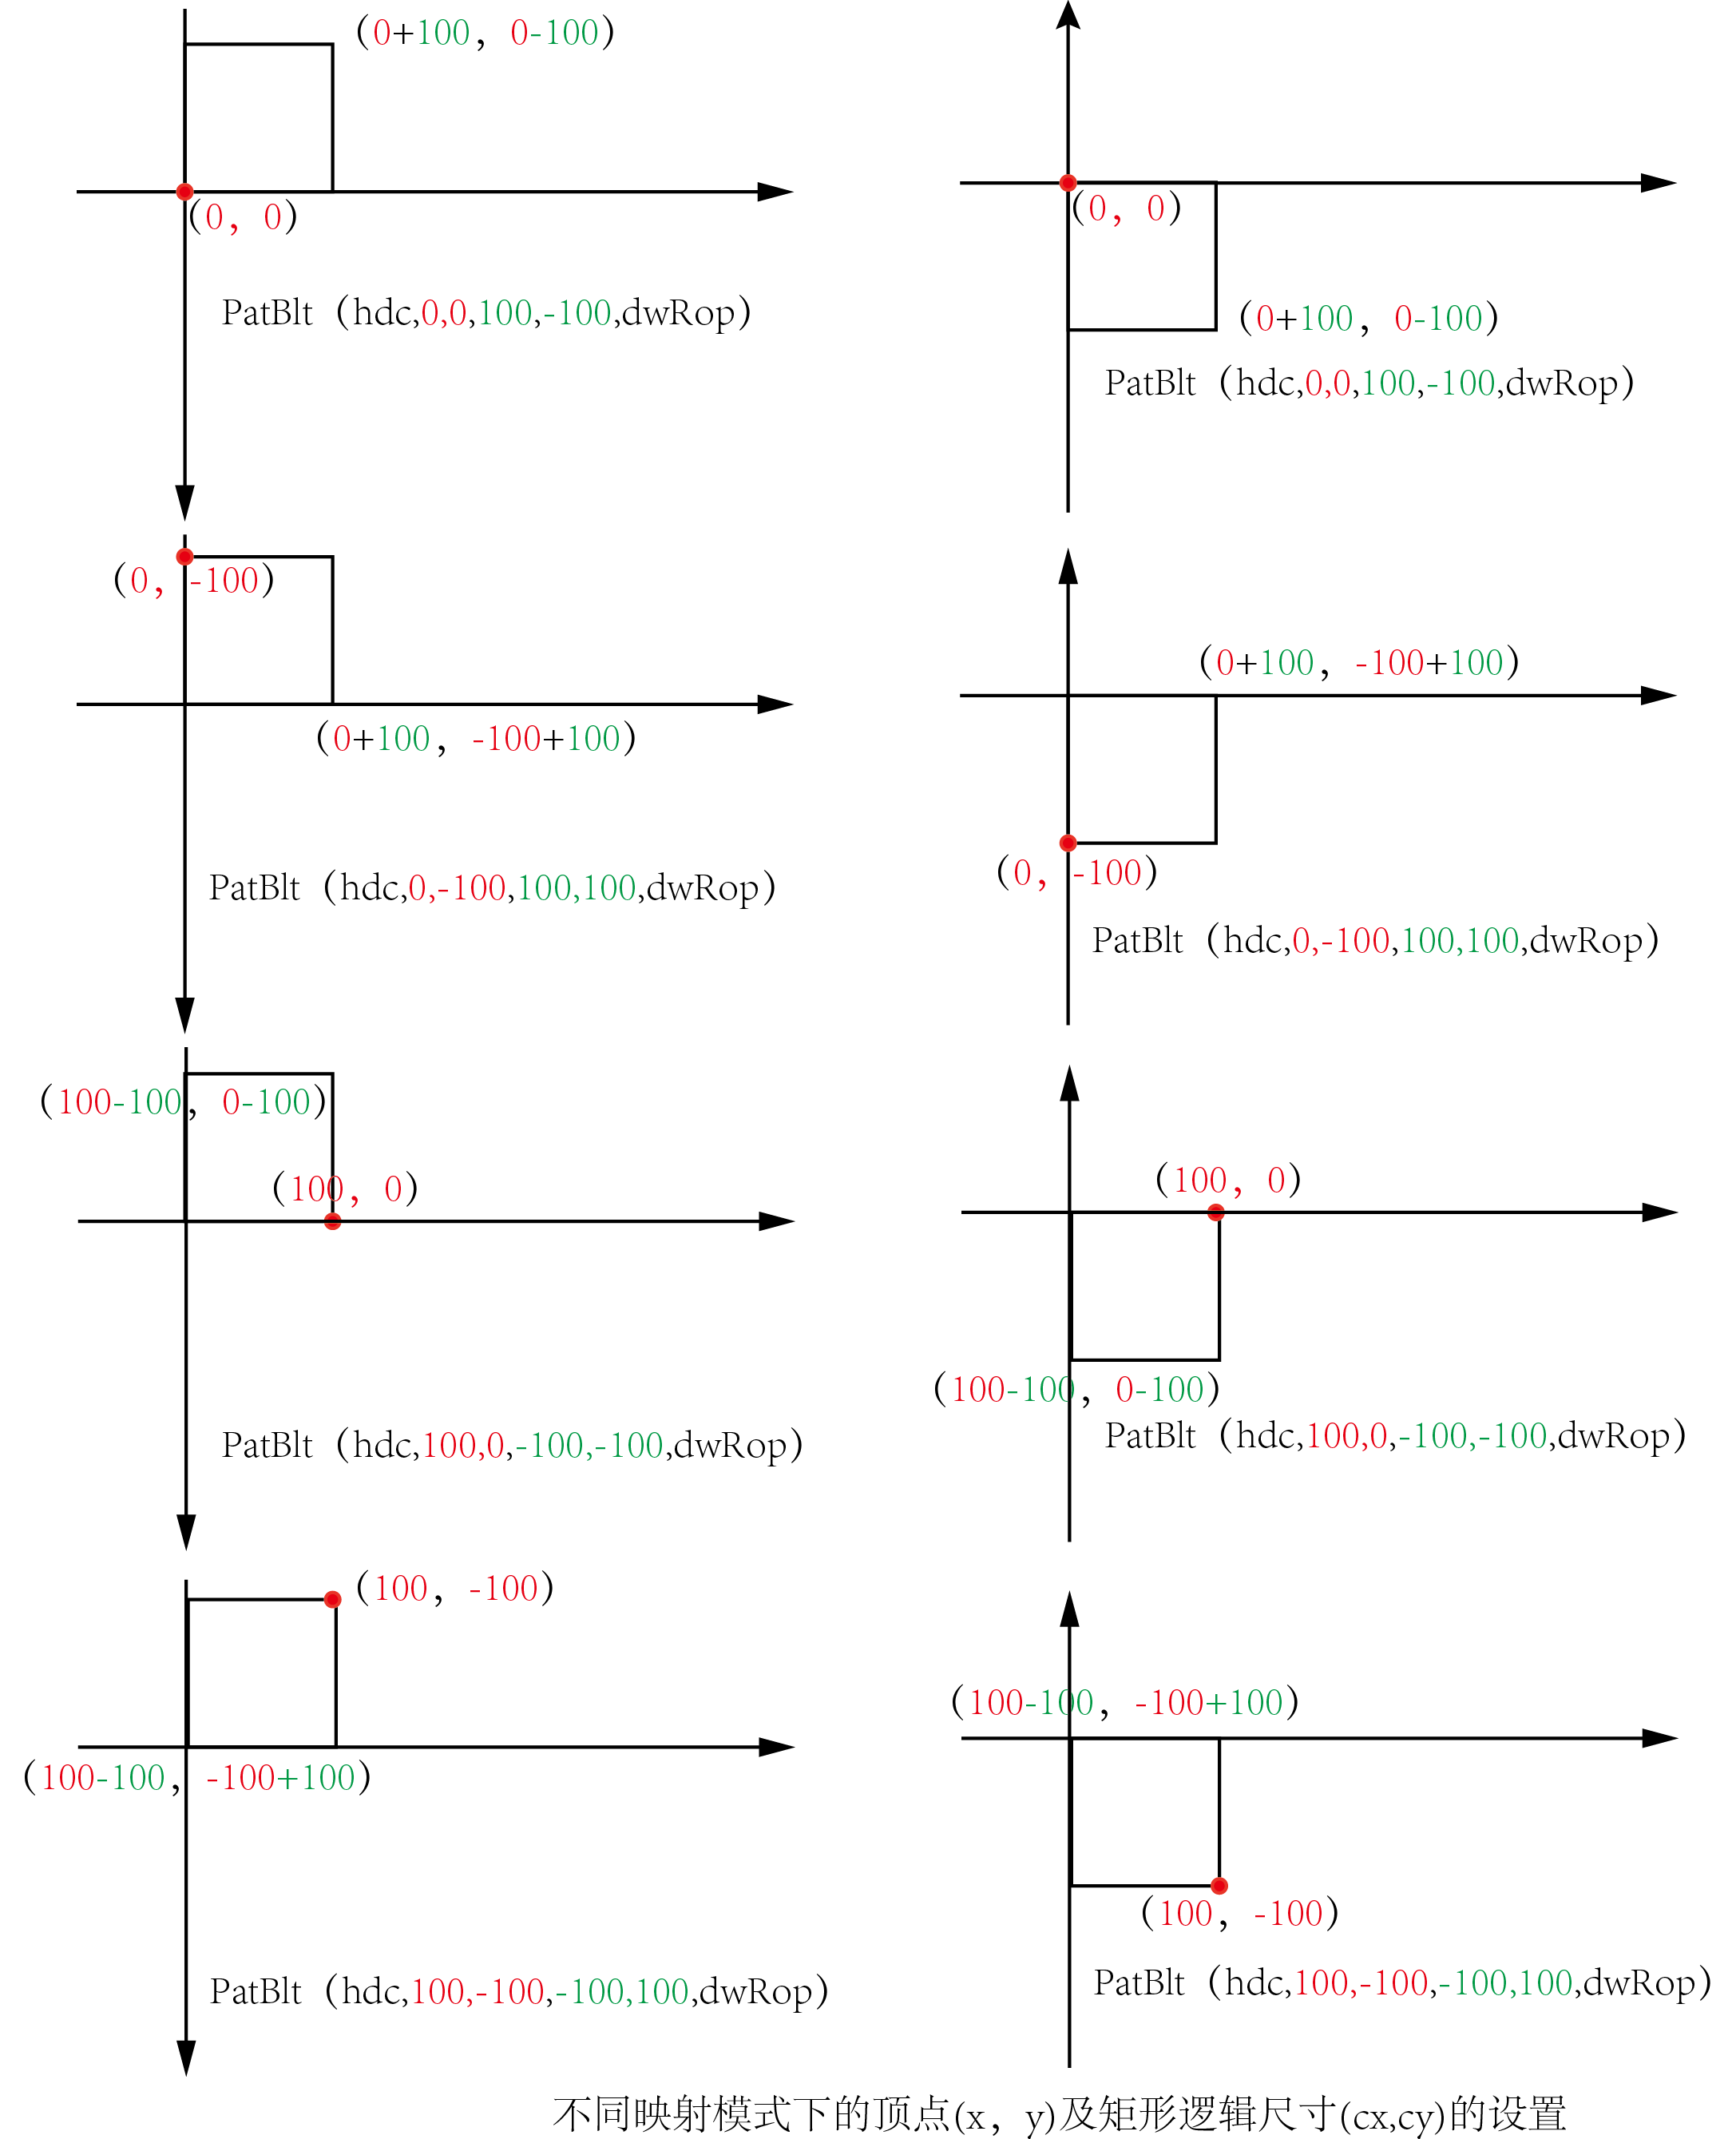 第14章 位图和位块传输_14.1-14.3 位图基础